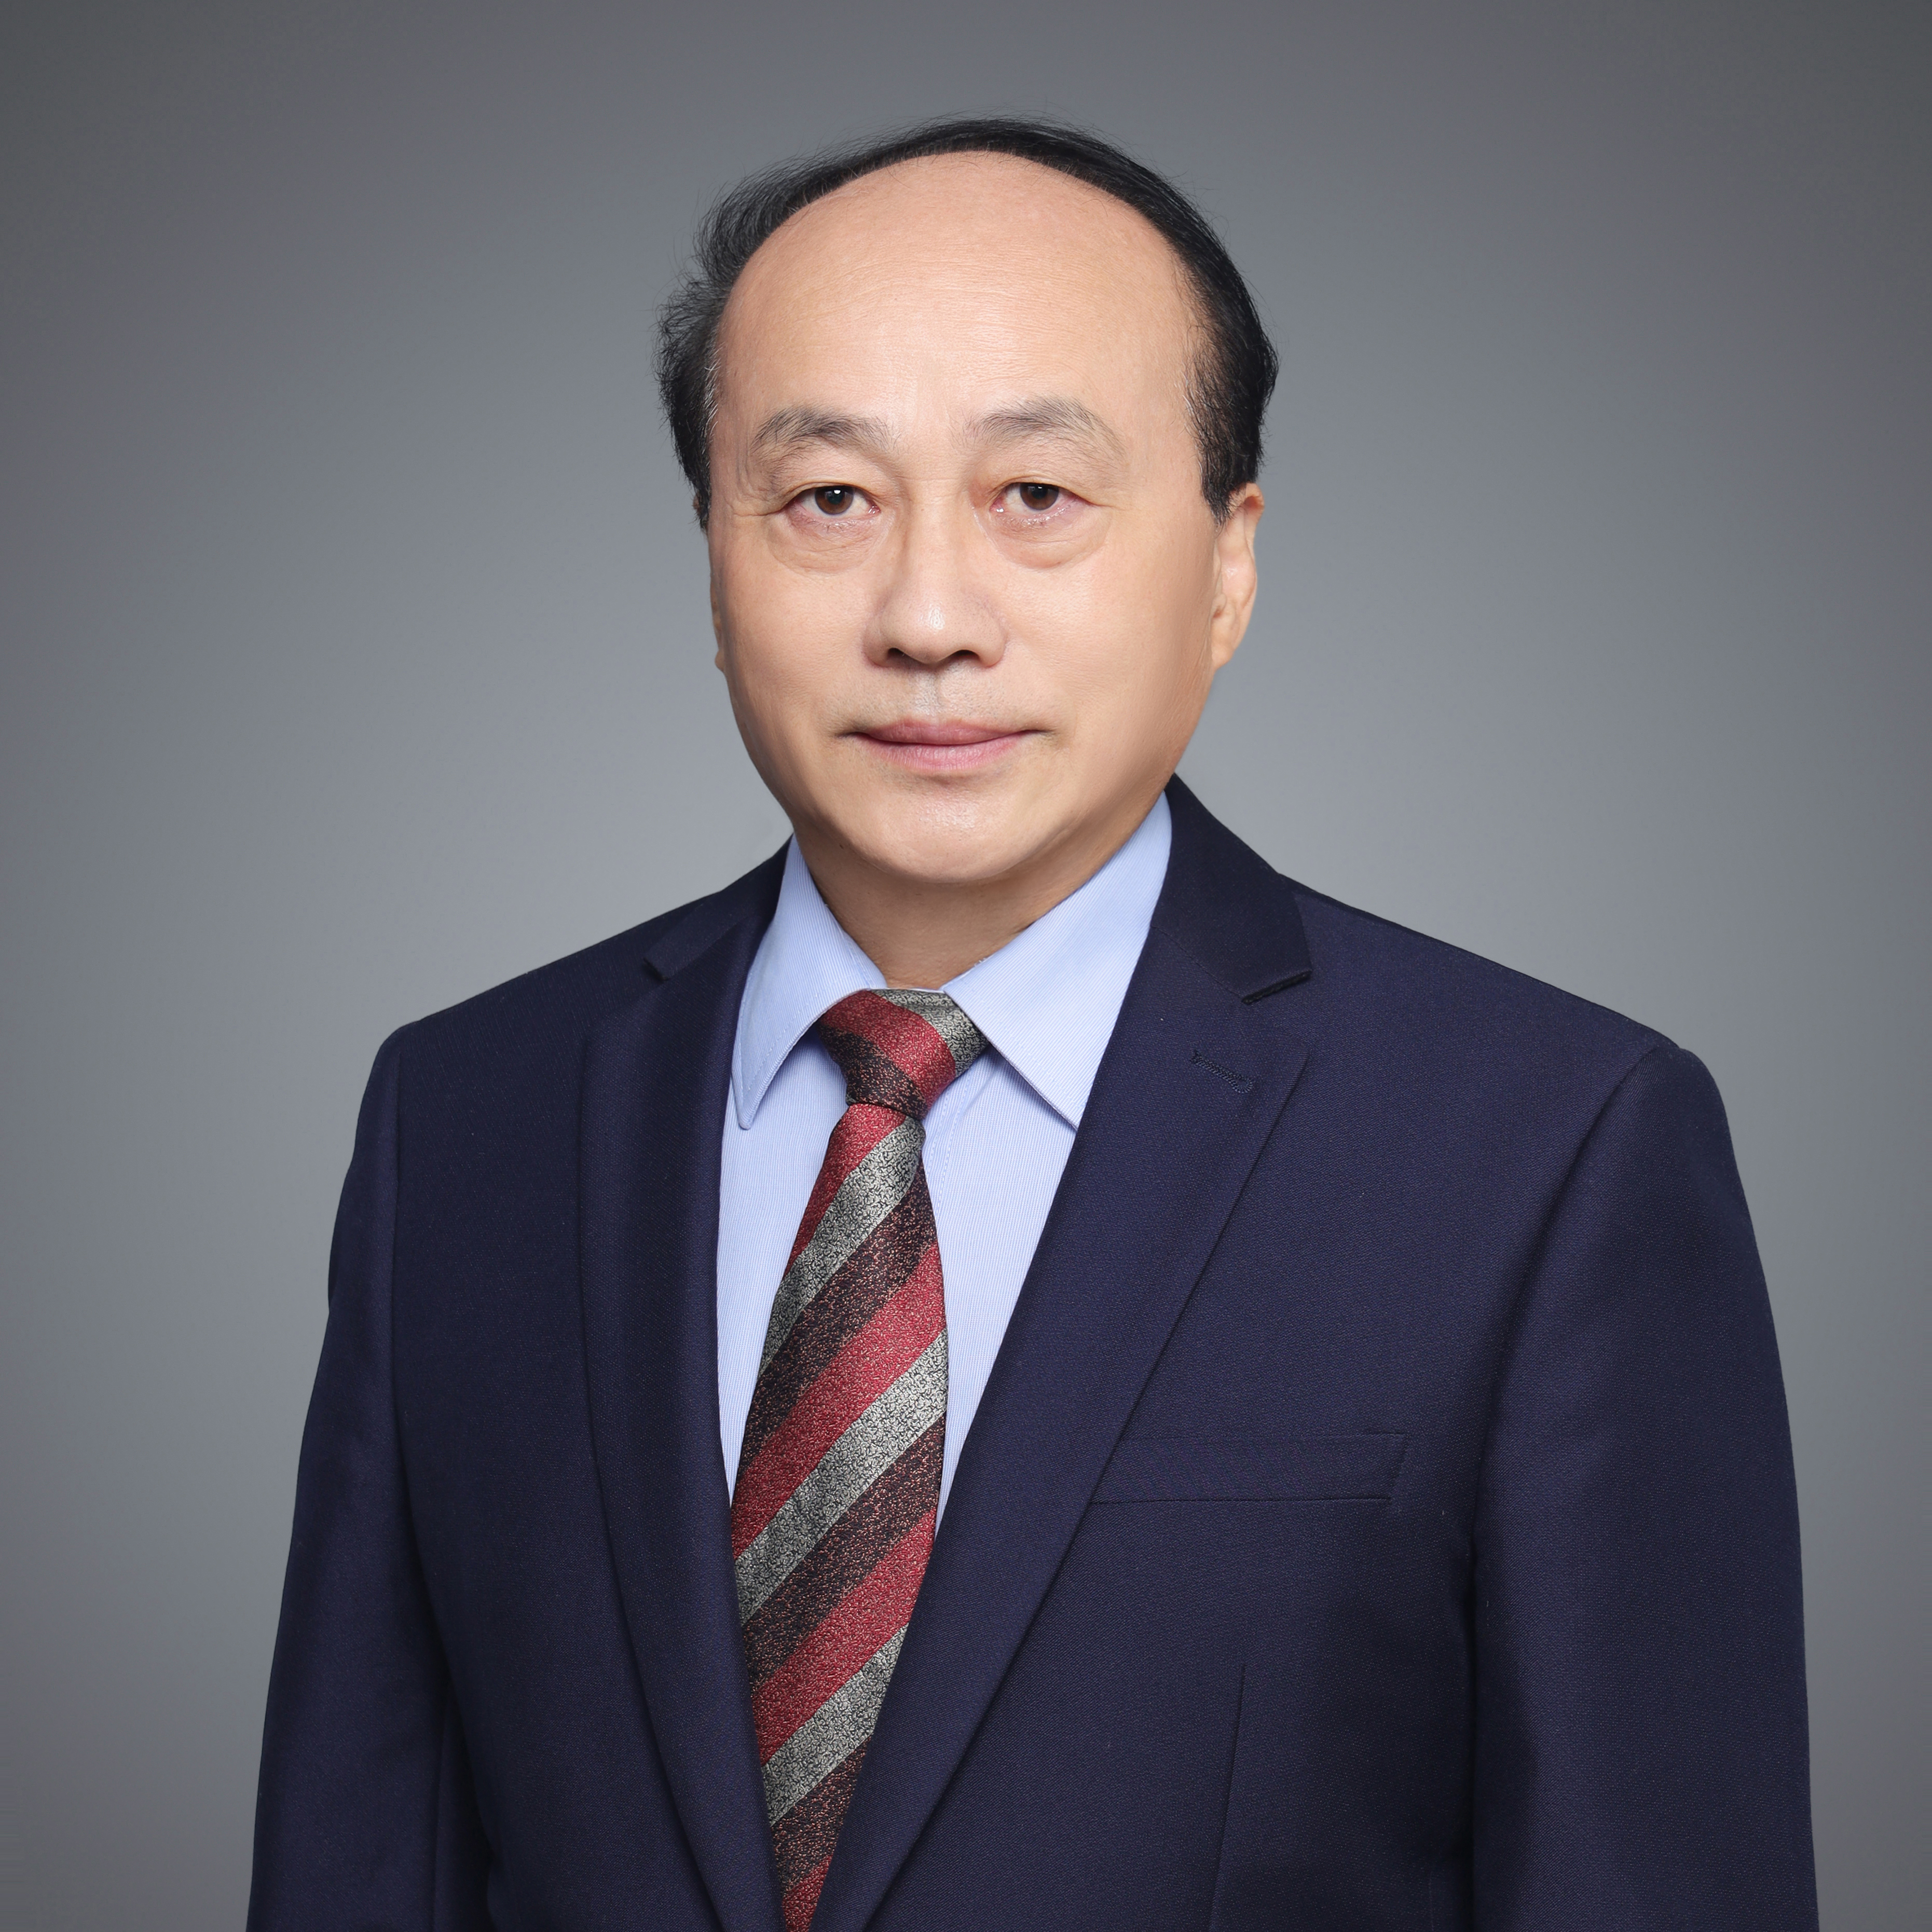 福大张久俊教授当选中国工程院外籍院士